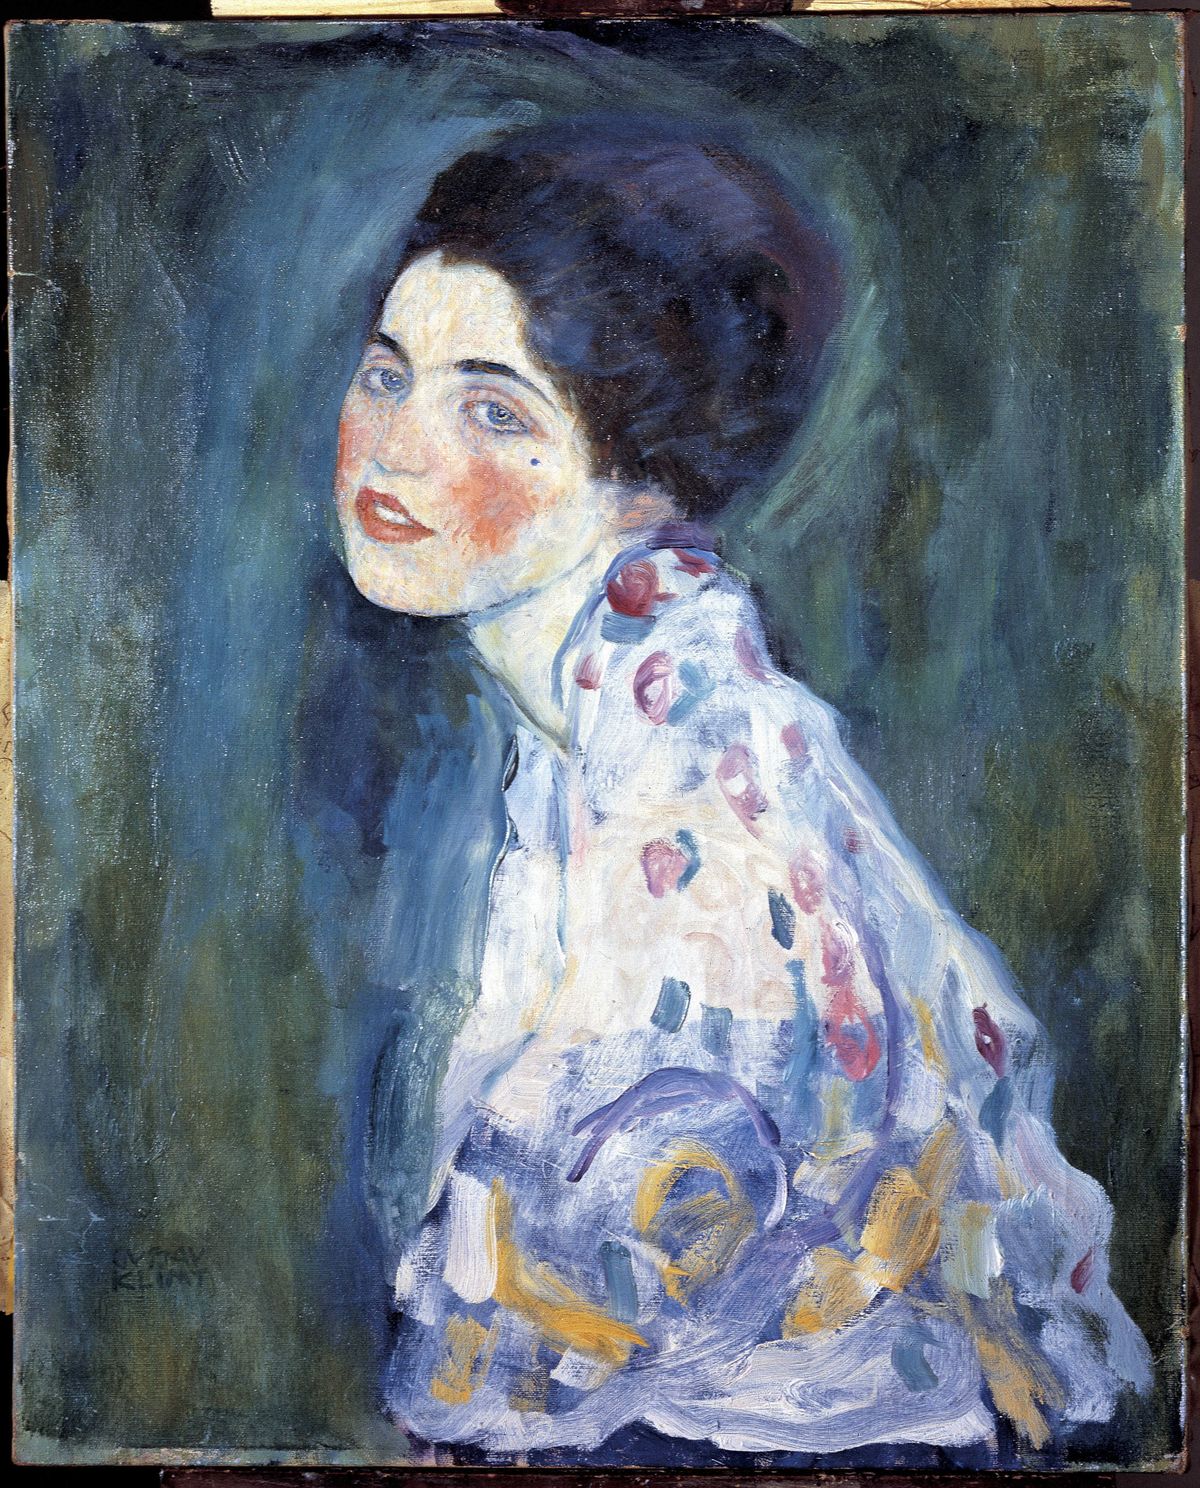 Műkincsrablások, amelyek megrázták a világot, műkincs, rablás, műkincsrablásokavilágban, Klimt’s Portrait of a Lady, festmény lopás